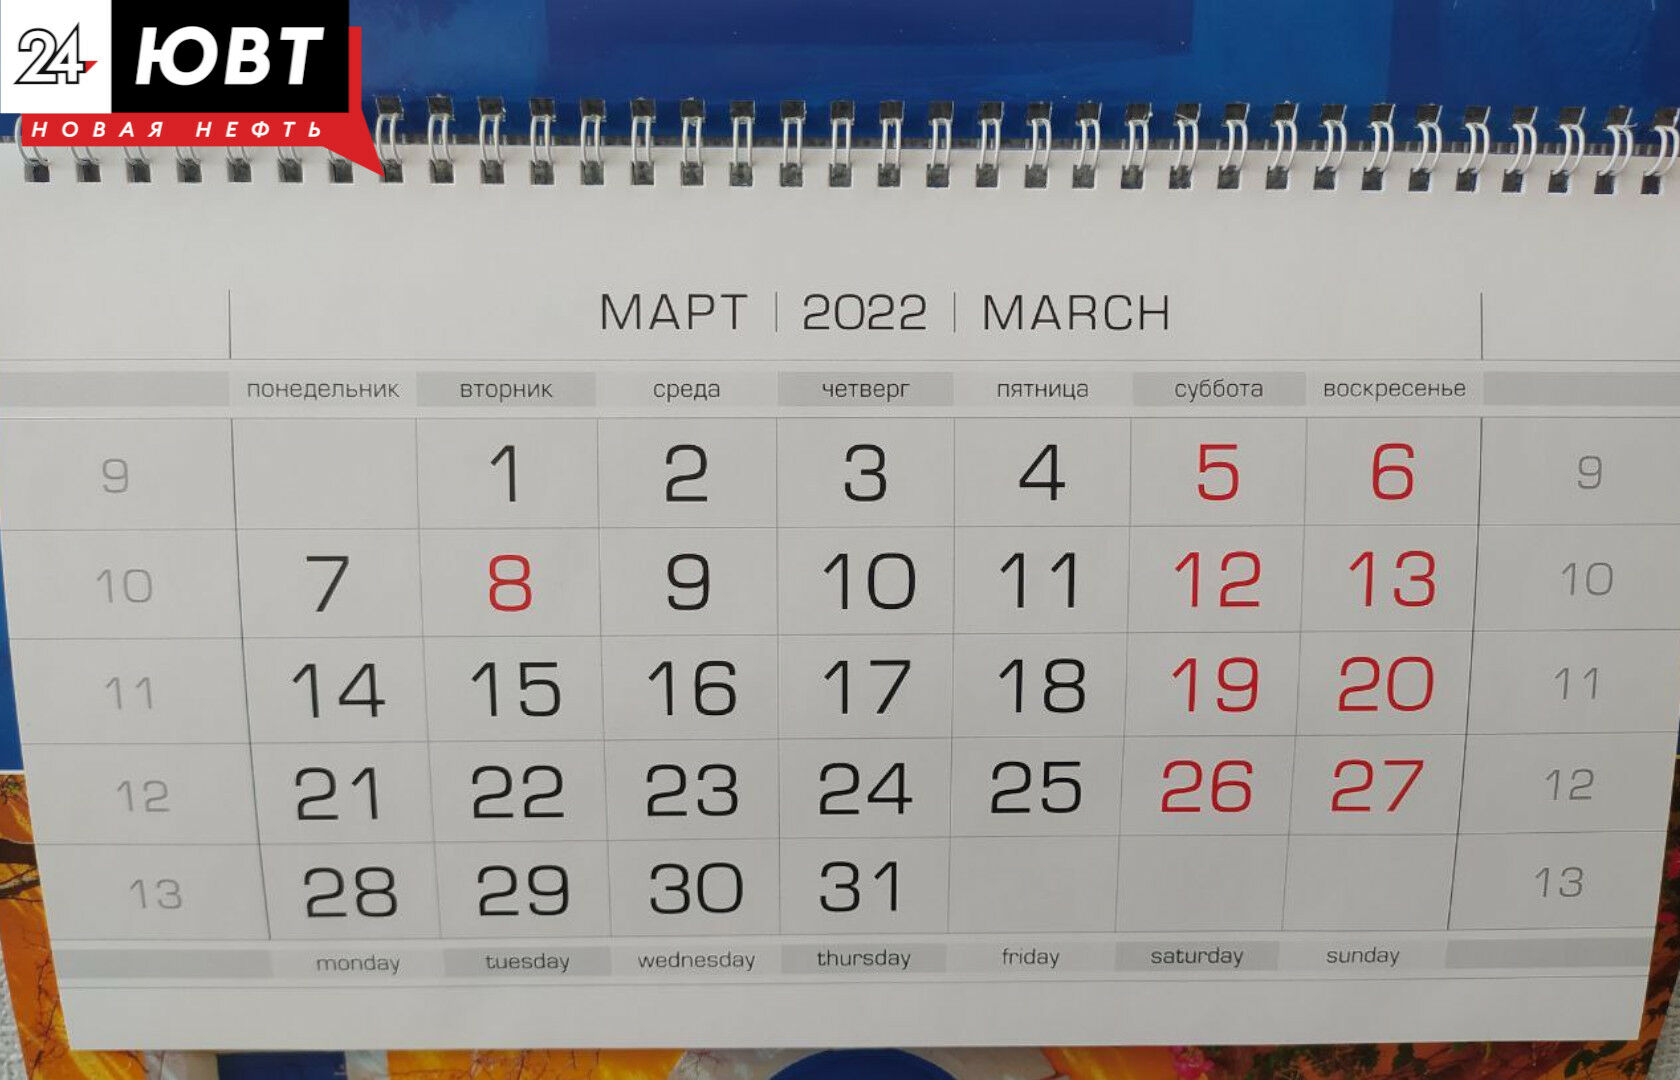 Праздники февраль 2022. Выходные дни в Татарстане 2022. Мартовские праздники 2022. Выходные дни в марте 2022 года в Татарстане. Календарь рабочих и выходных дней.